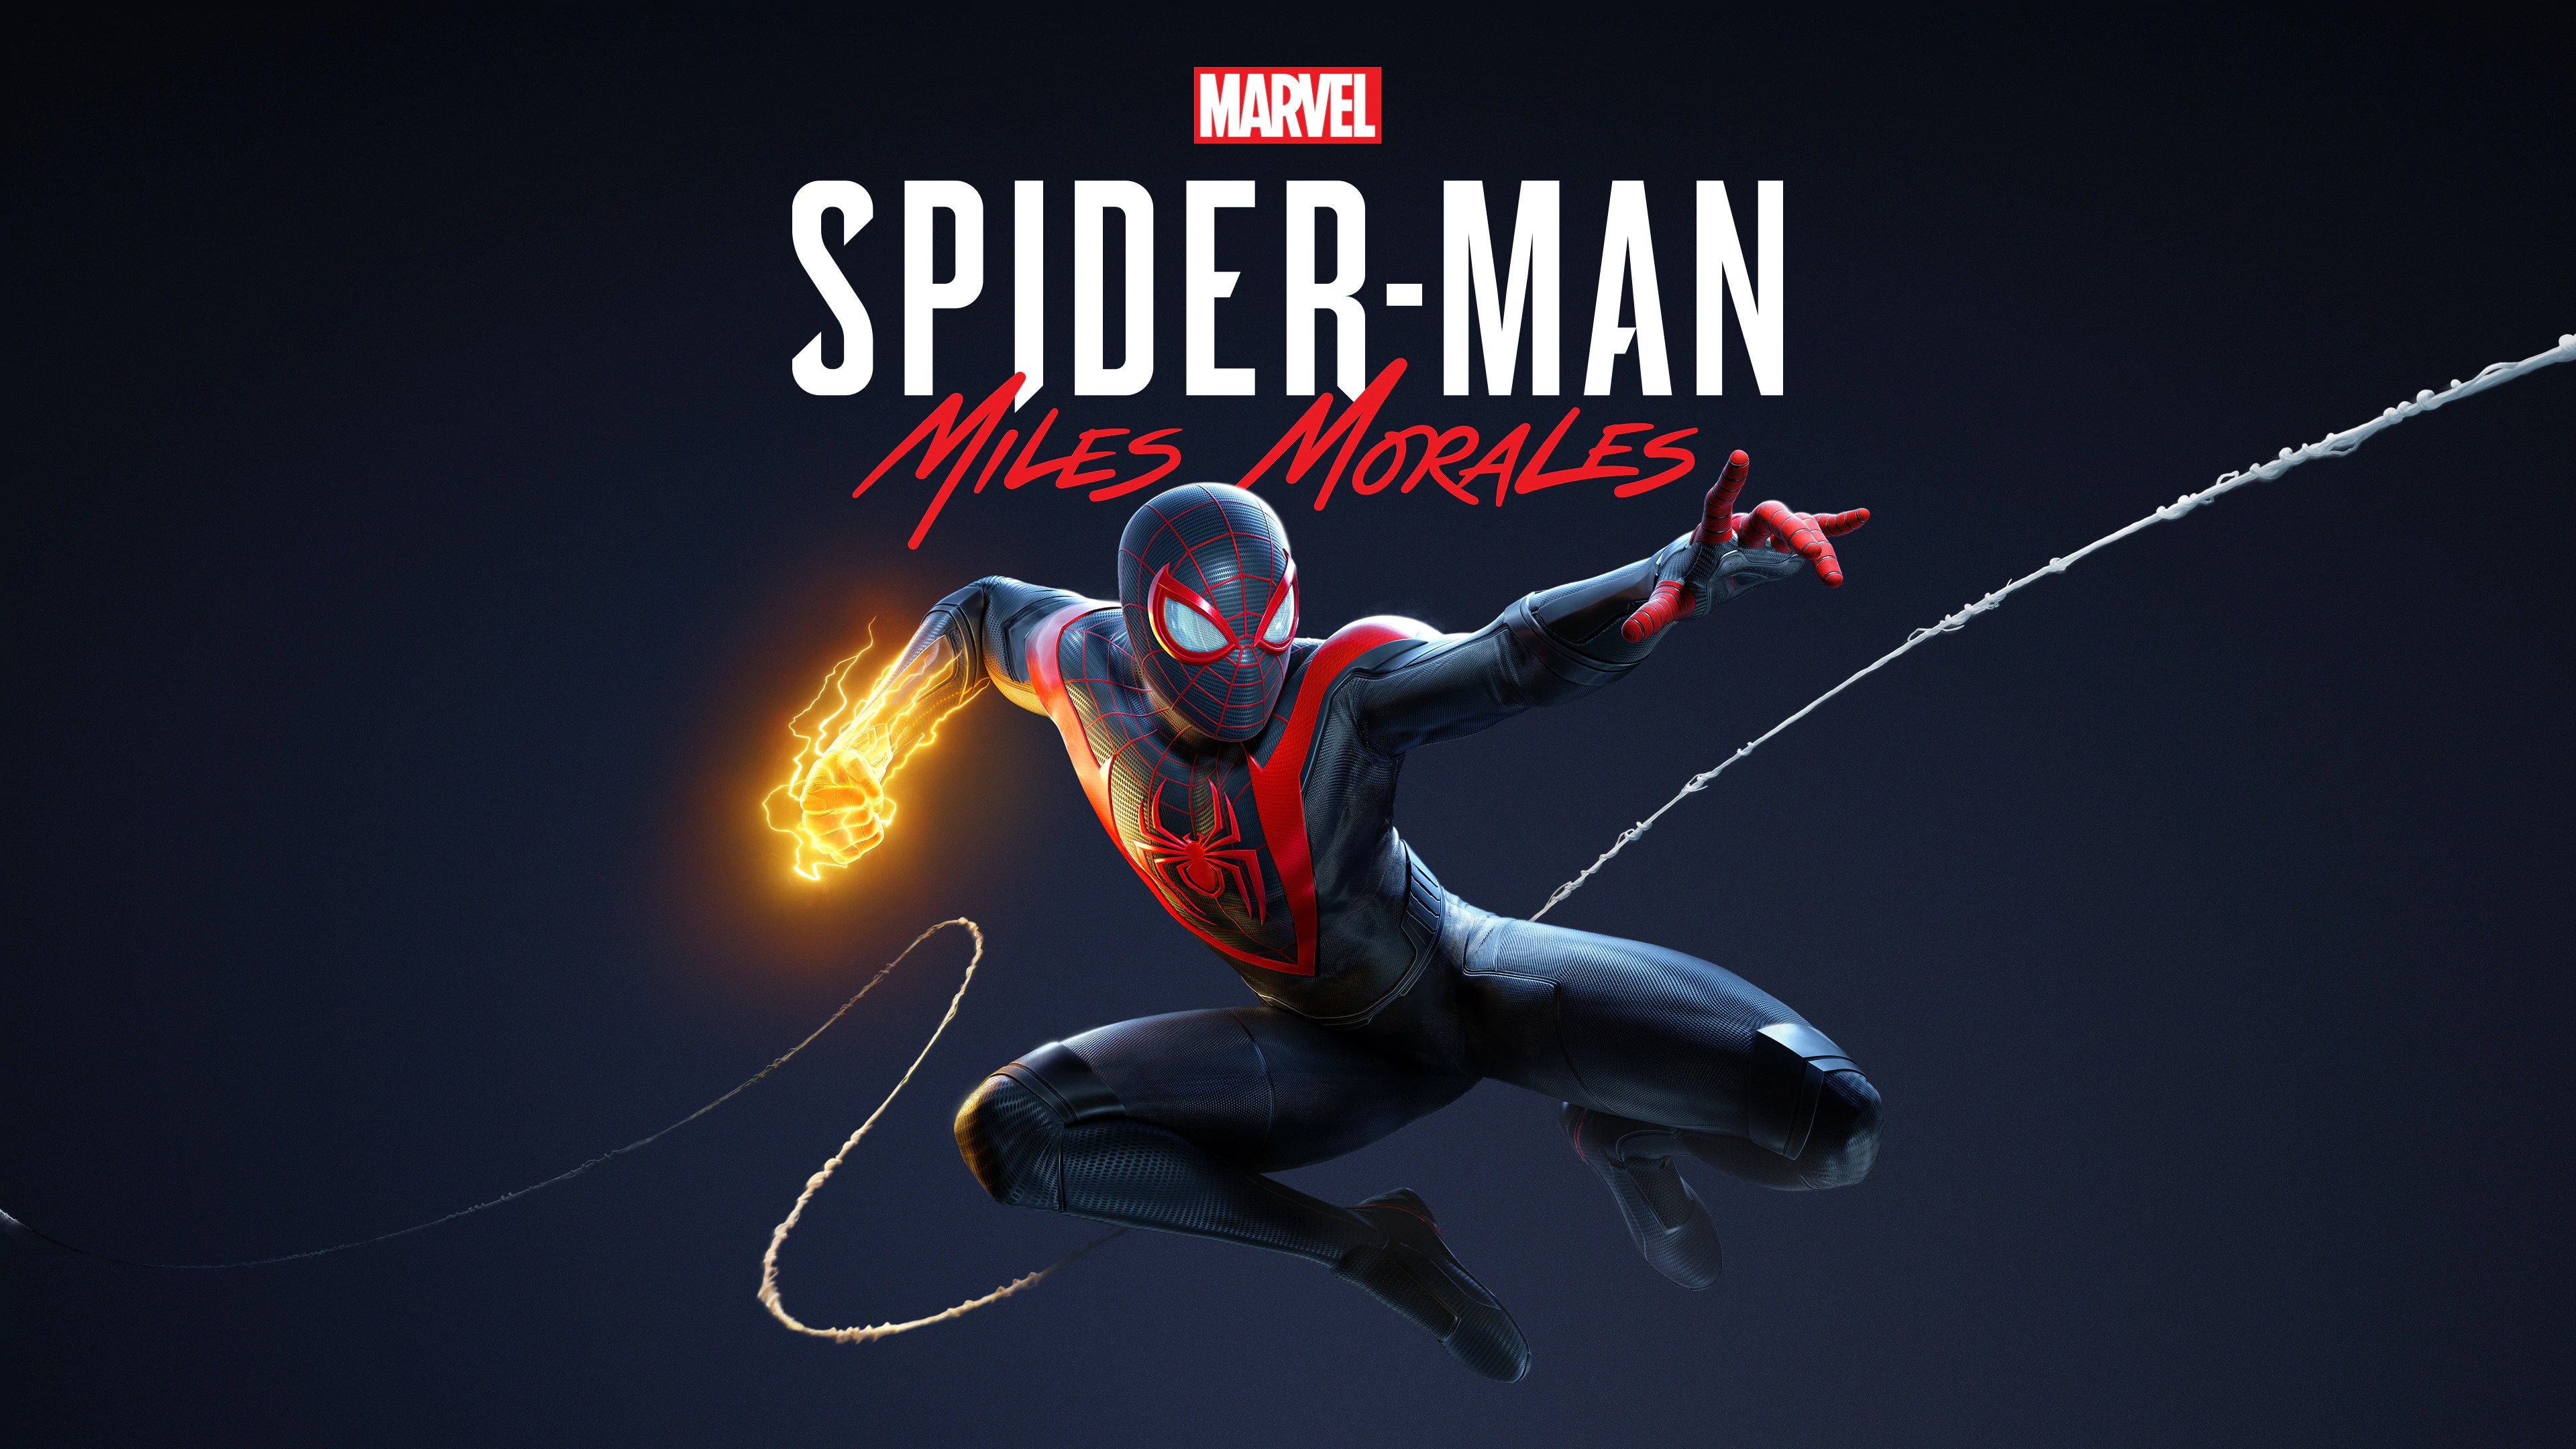 Marvel's Человек-паук /// Spider-Man: Miles Morales ( прохождение 12 )